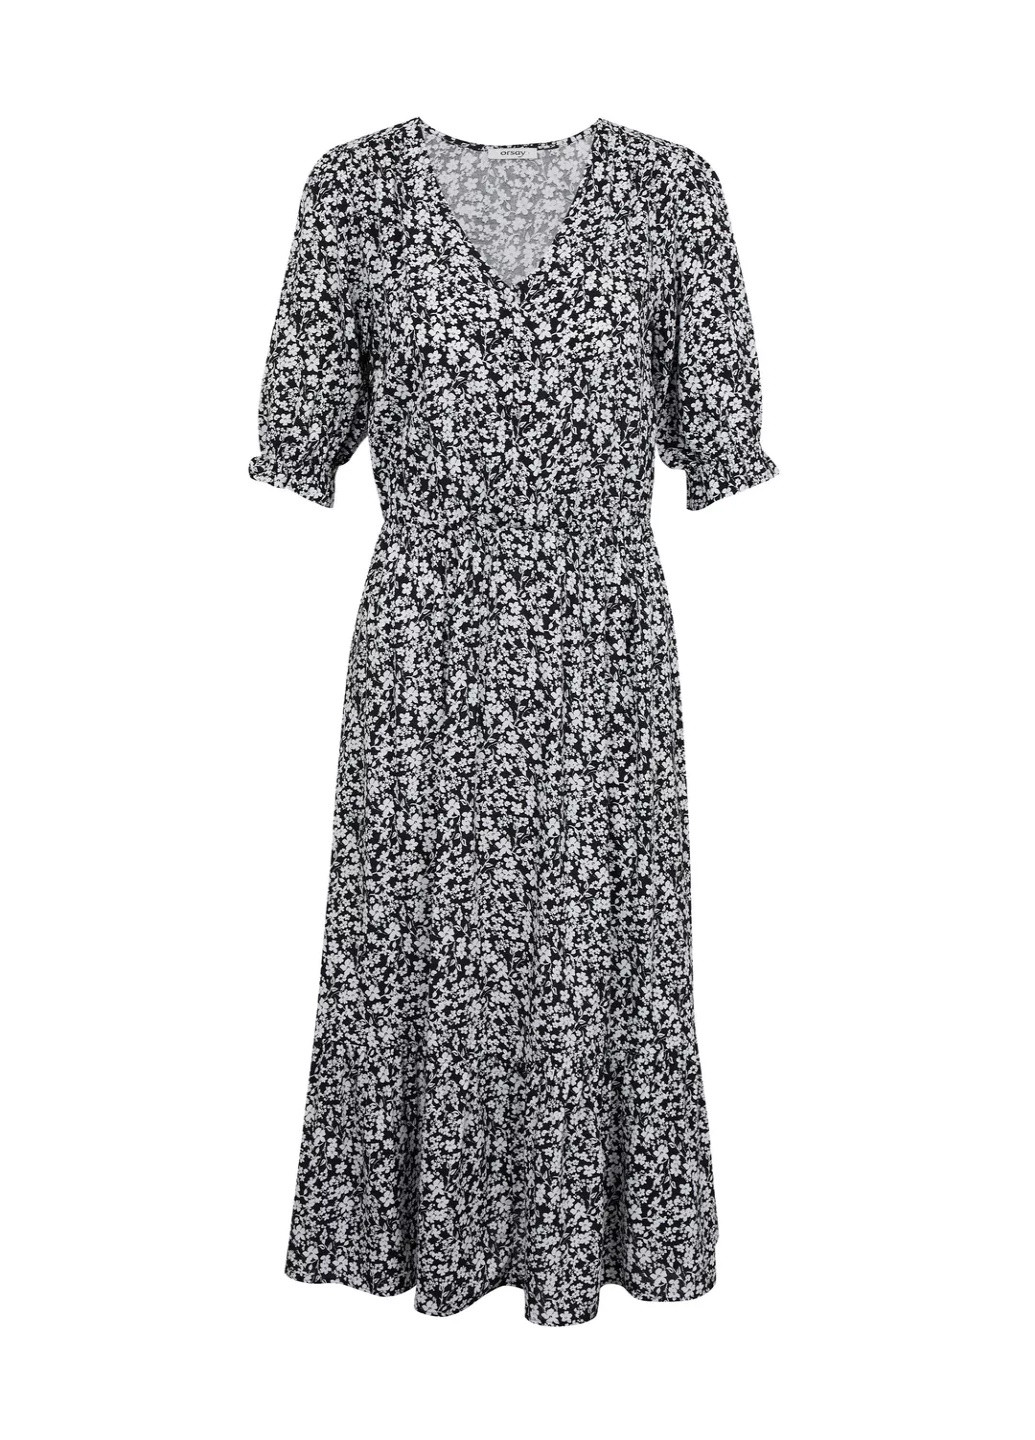 Черно-белое повседневный платье Orsay с цветочным принтом